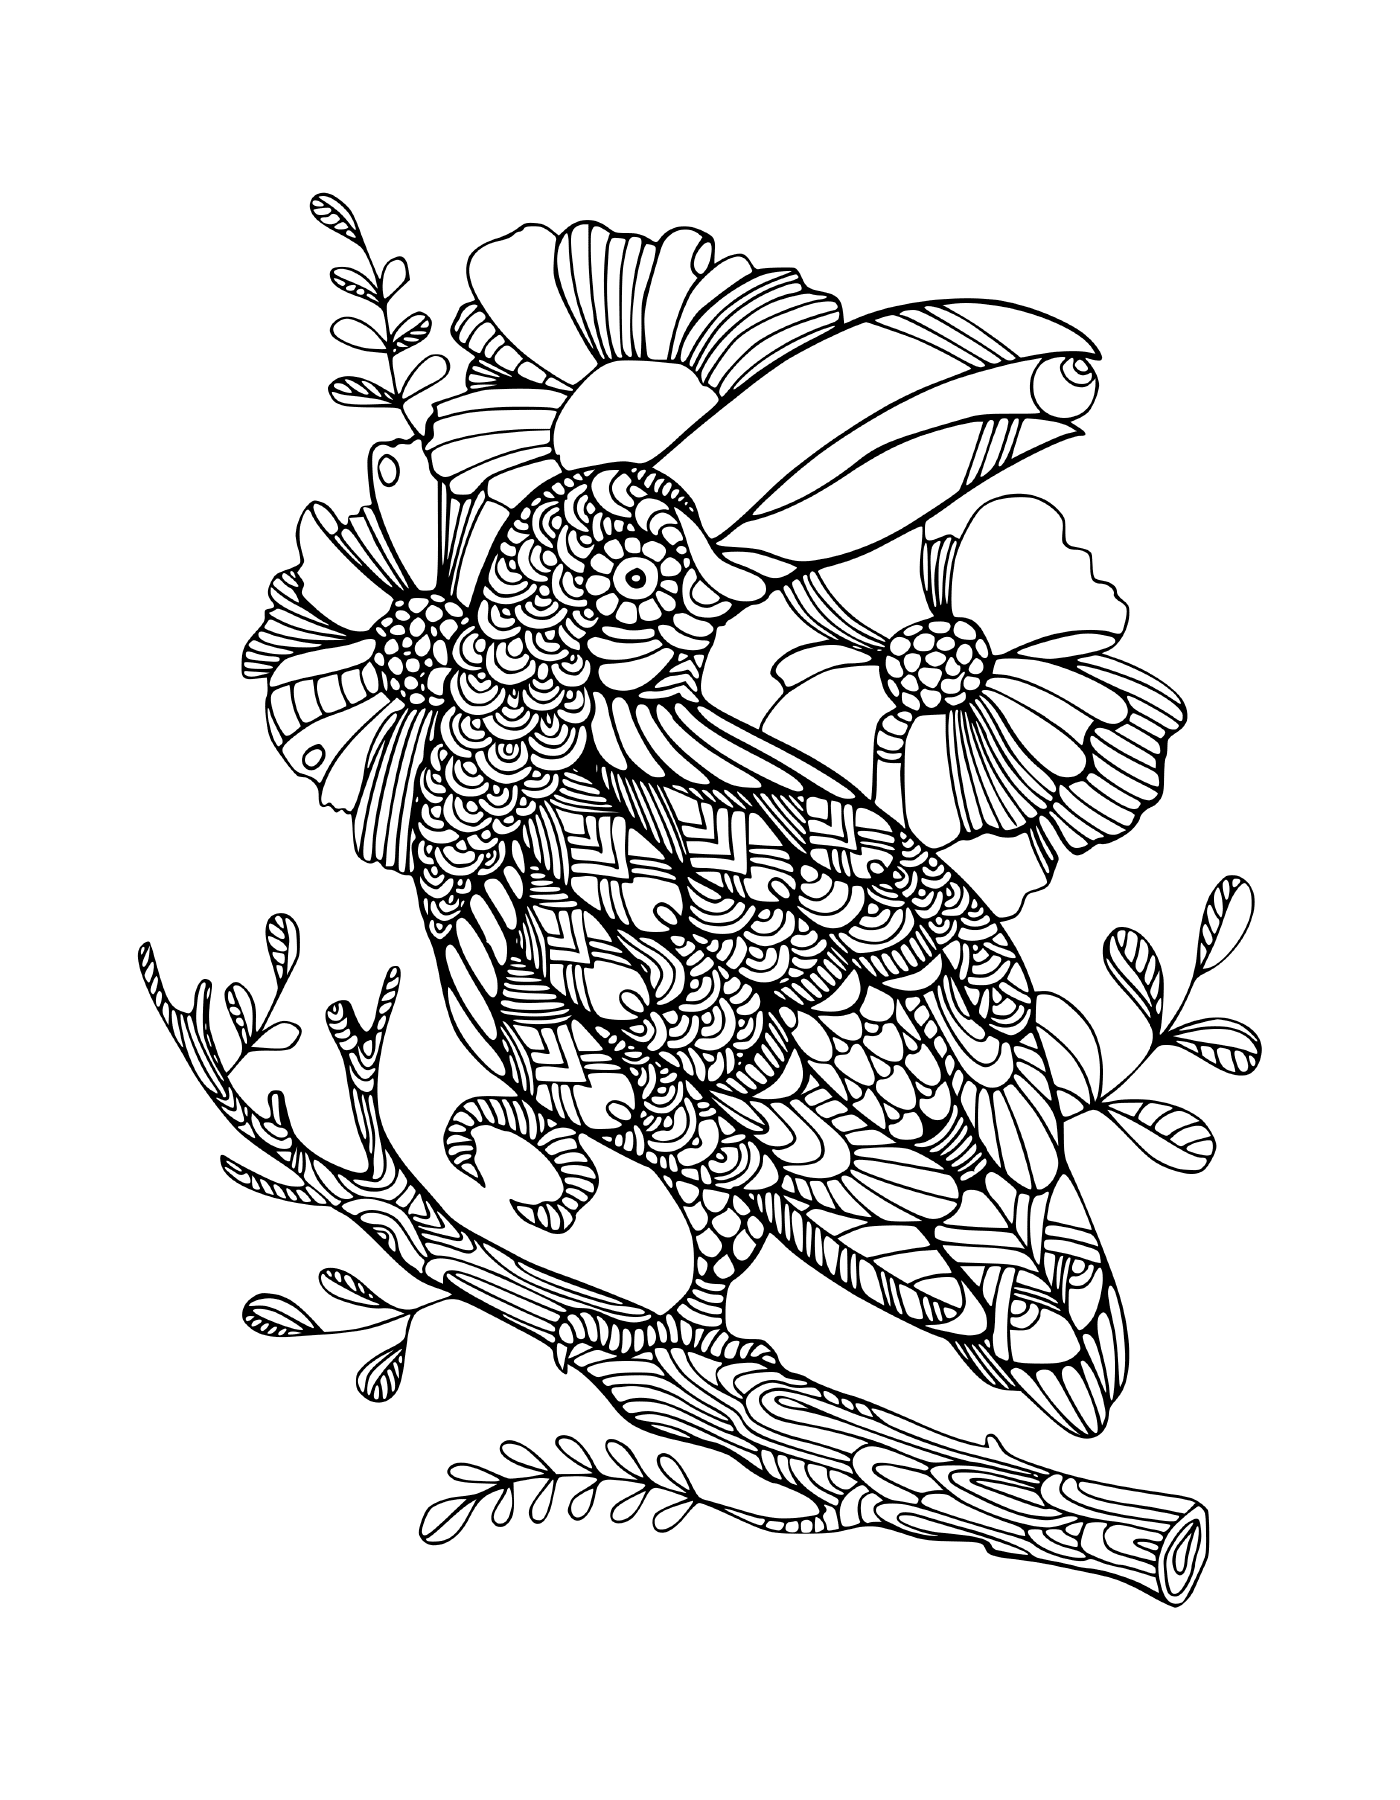  Птица, сидящая на деревянной ветке с цветами 